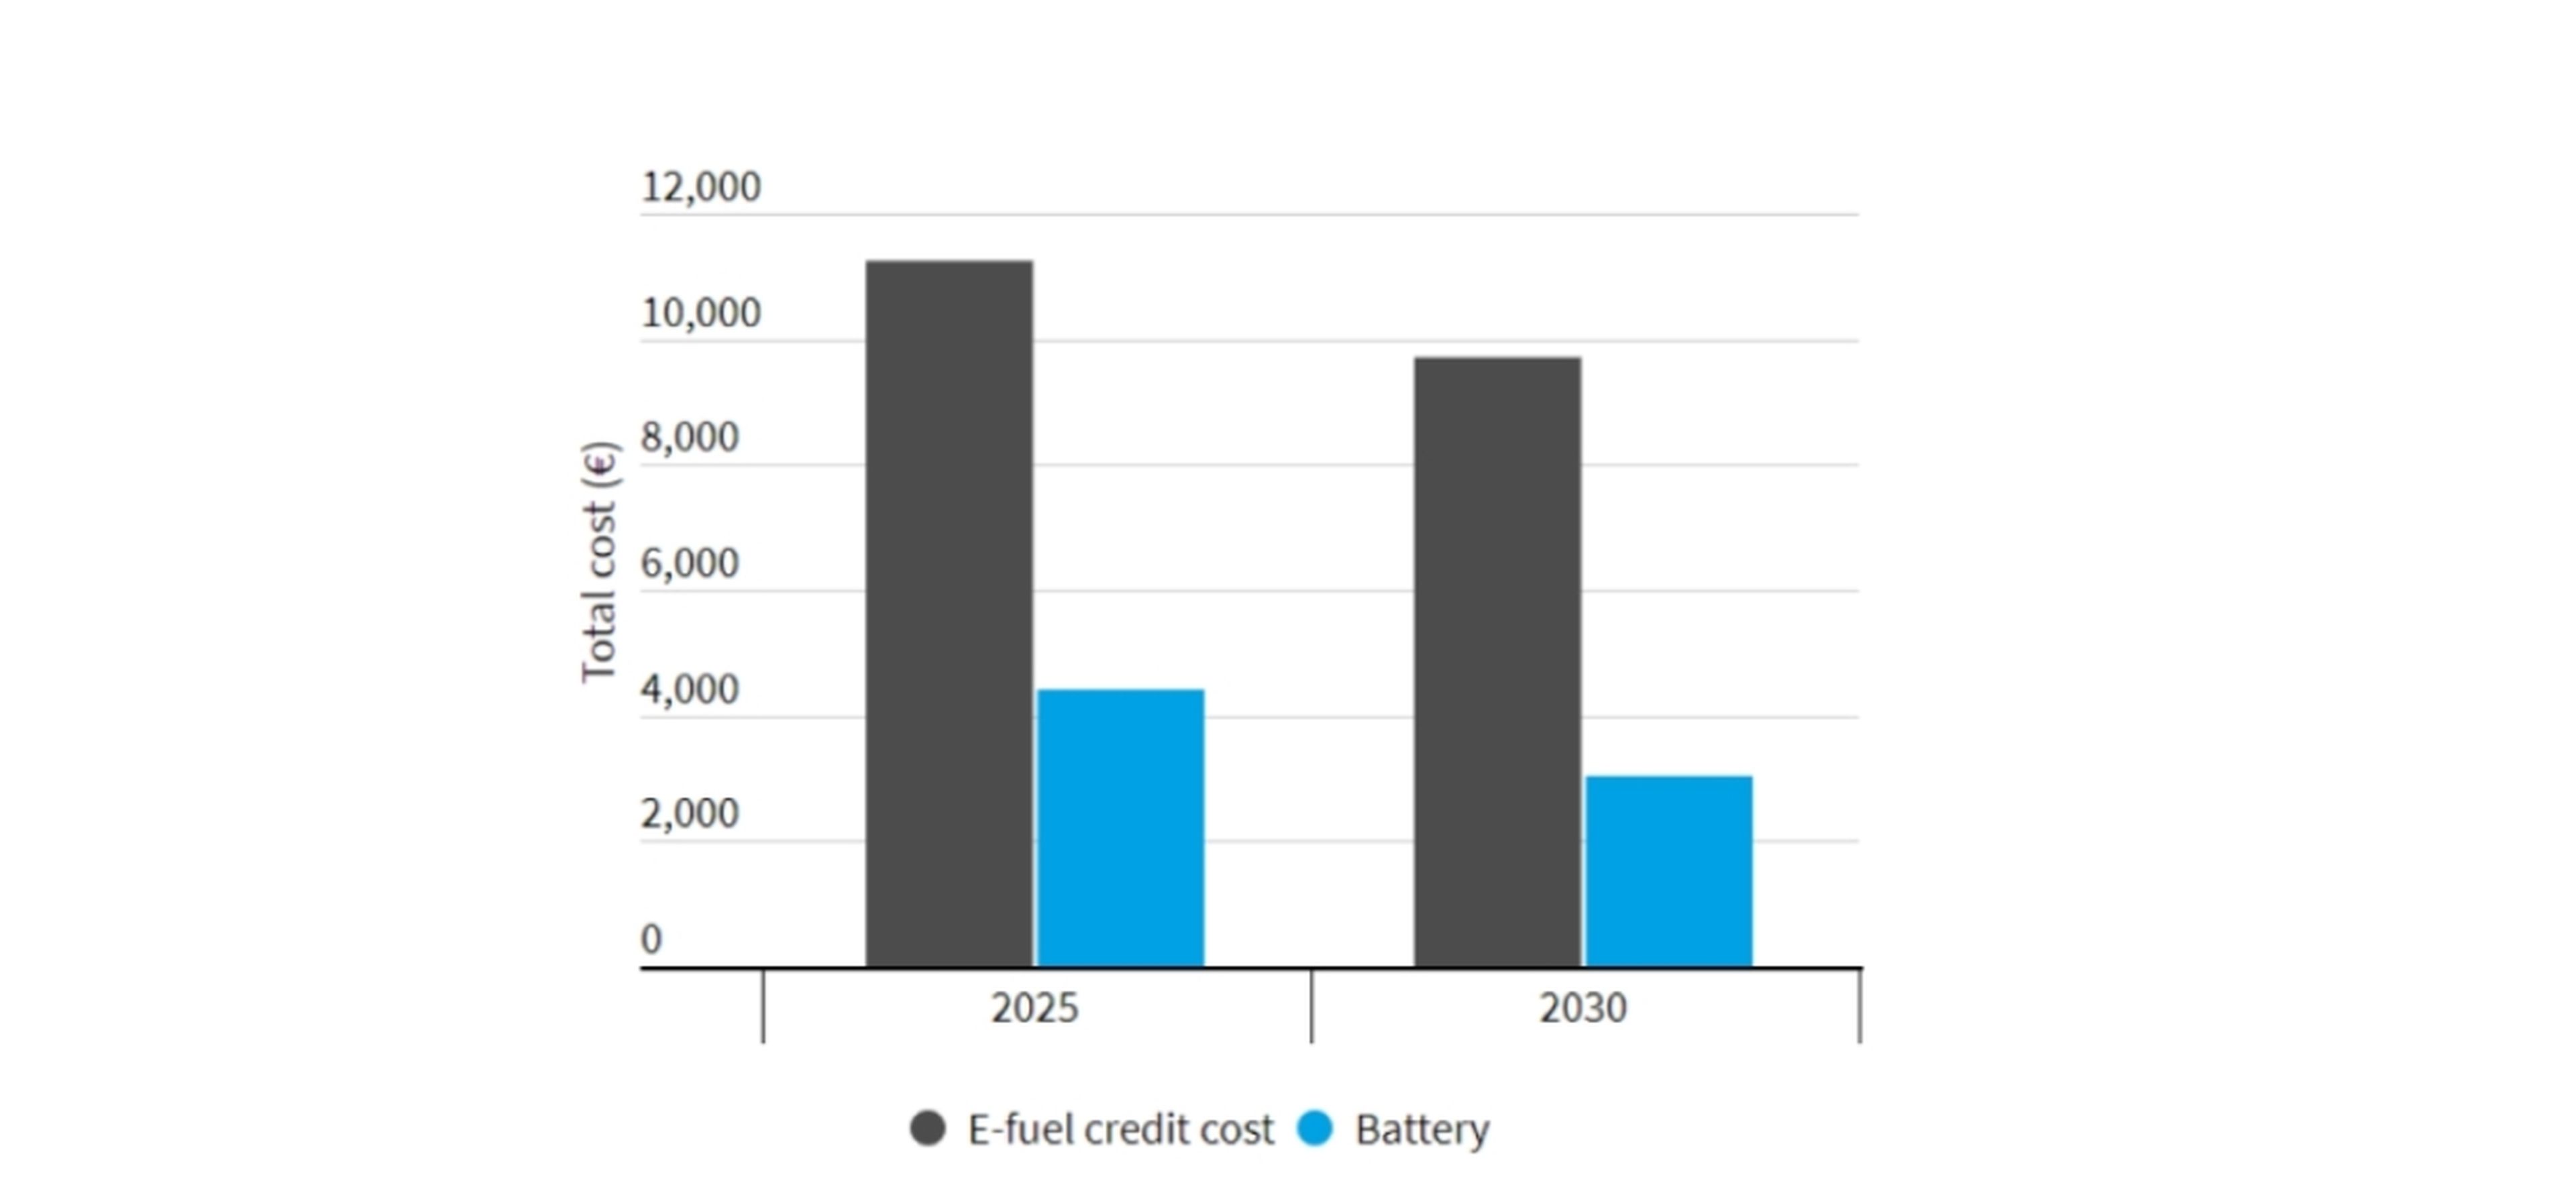 Comparación coste e-fuel vs. baterías. Fuente: TYNDP Electricity.